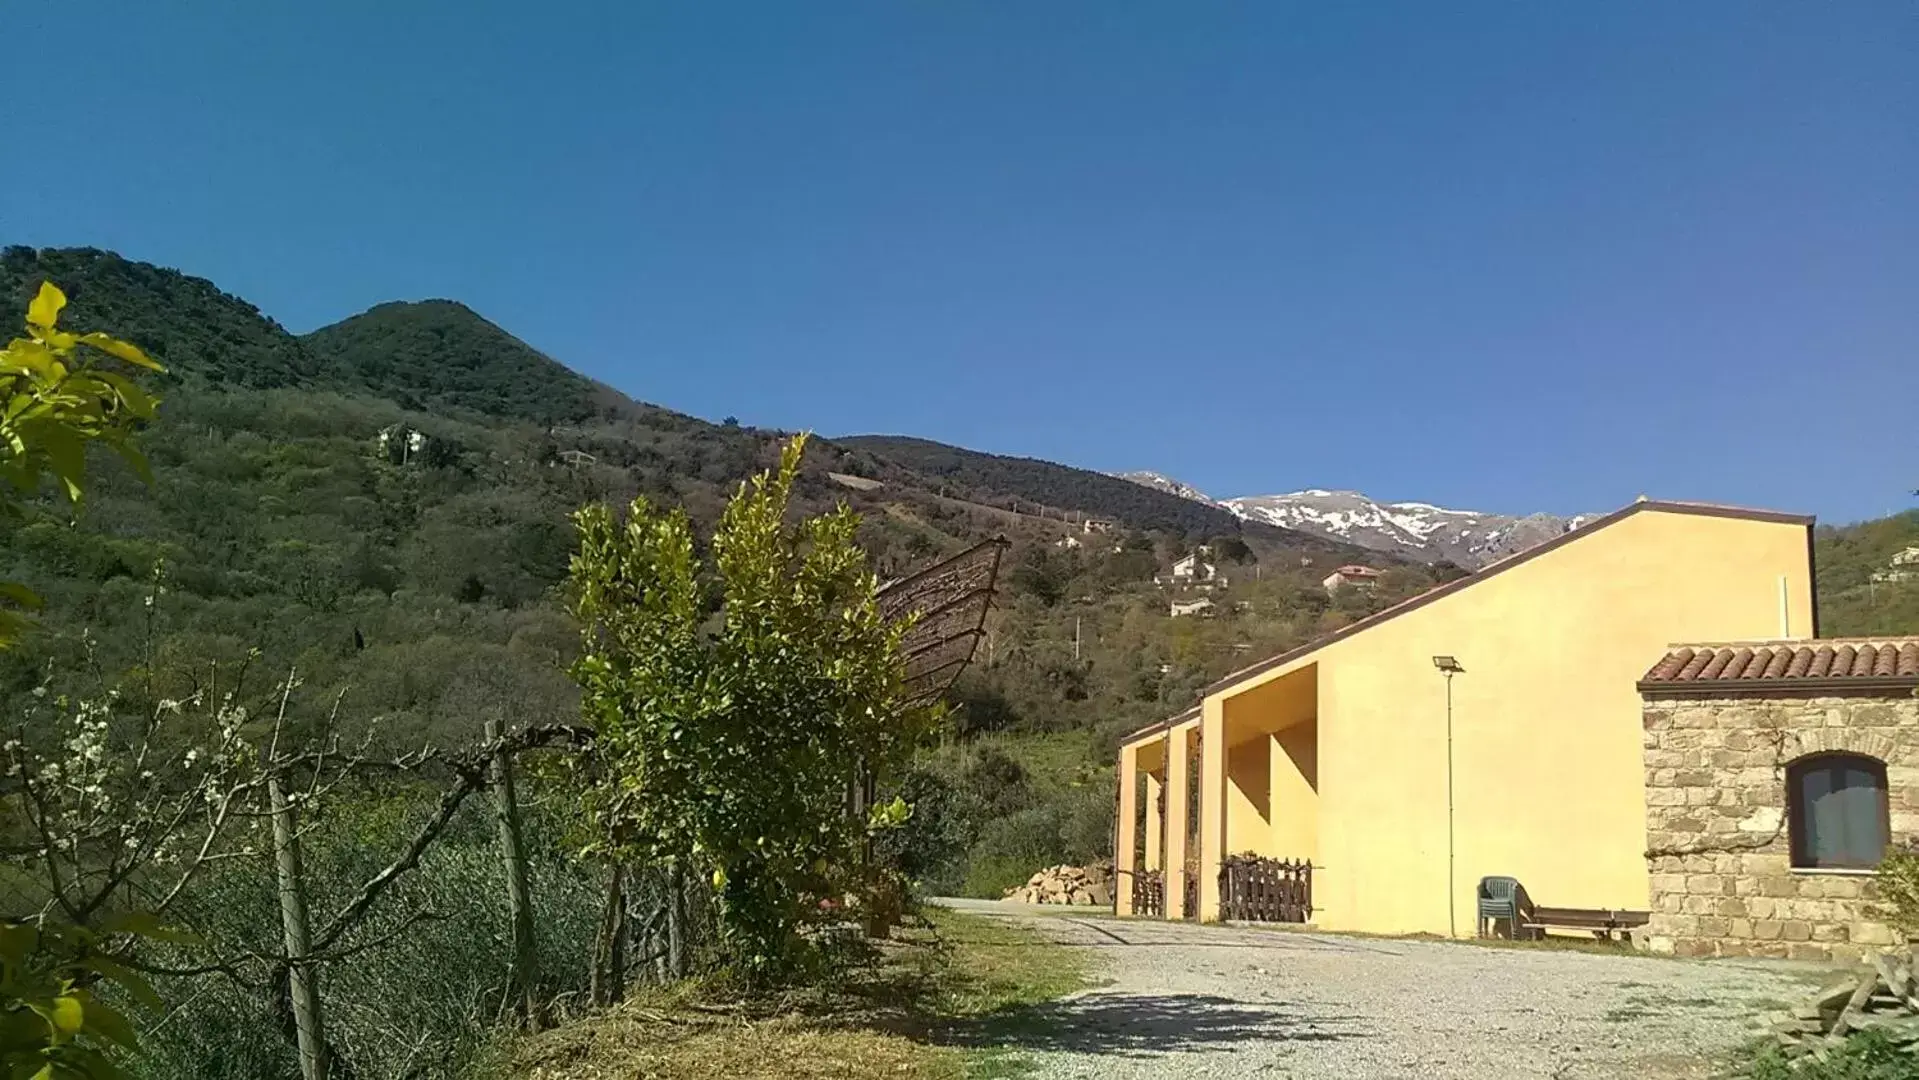 Property Building in Villaggio dei Balocchi